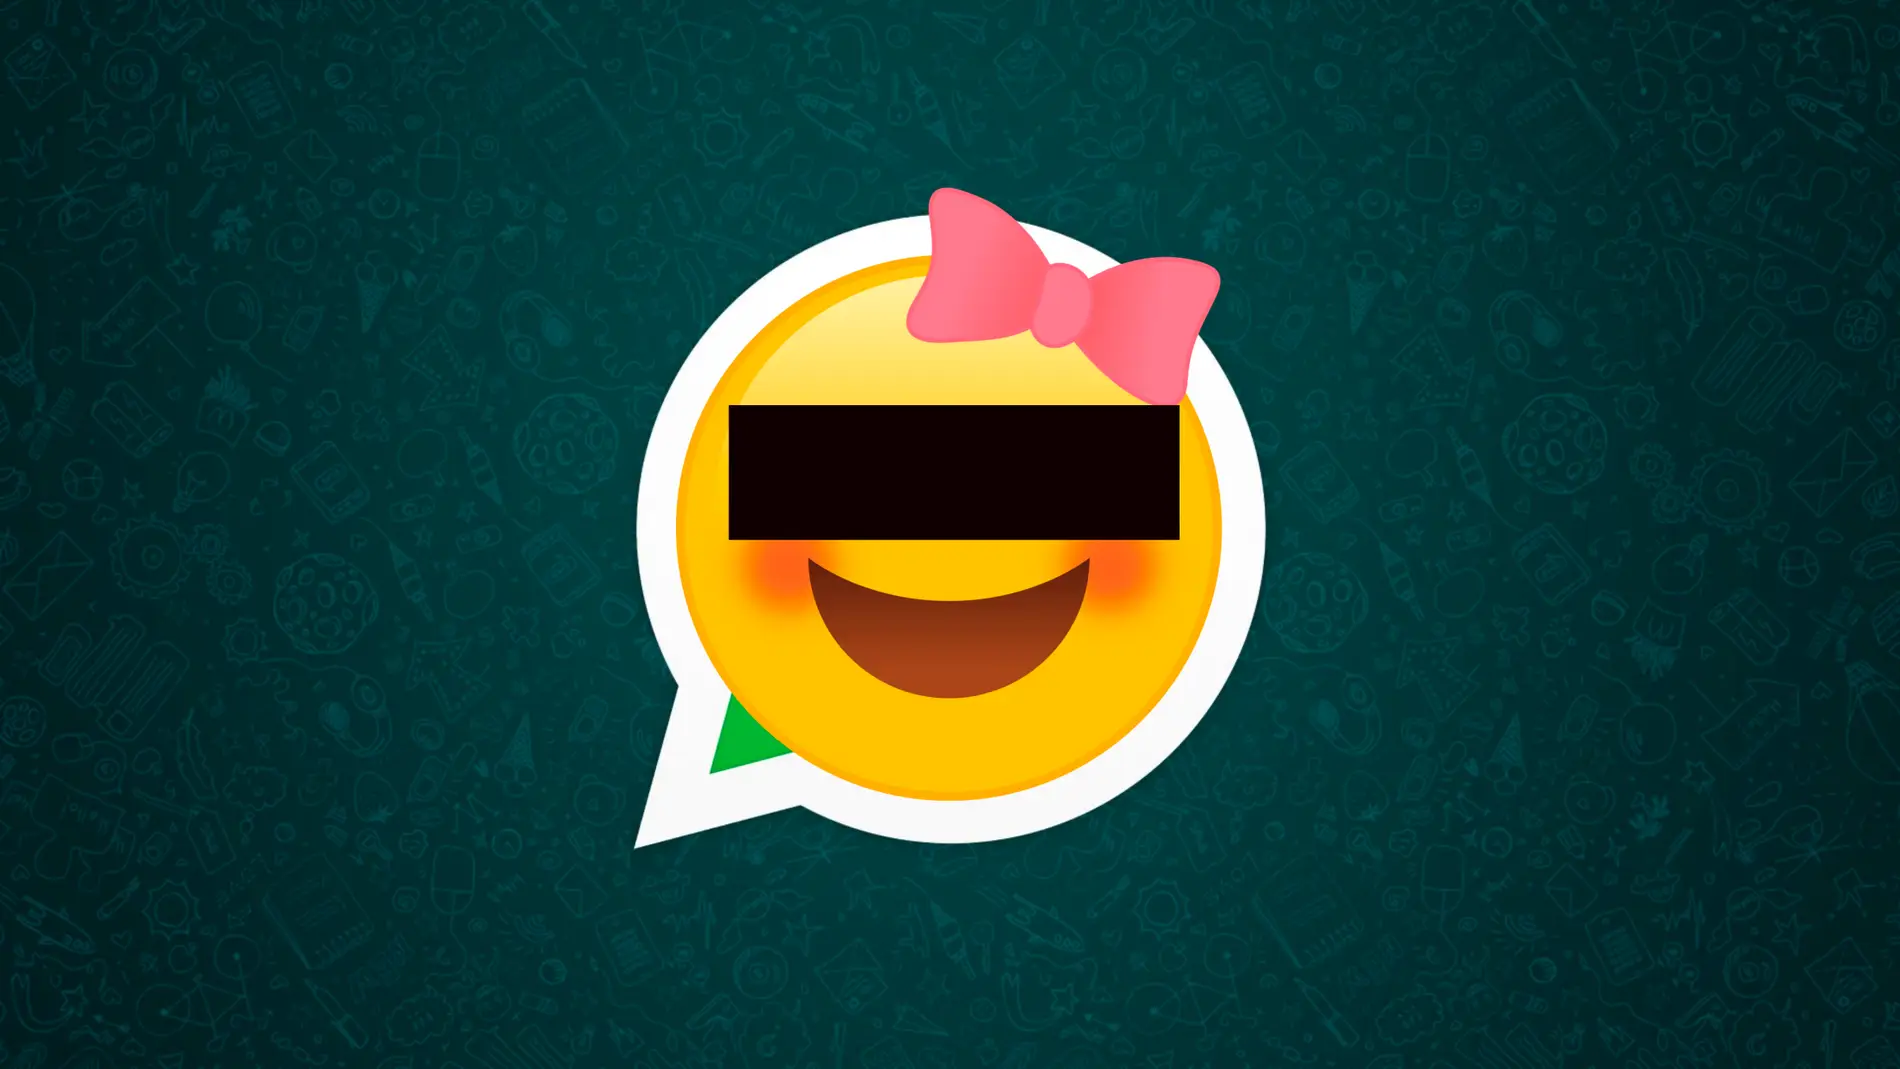 Icono de whatsapp para simbolizar la protección del menor